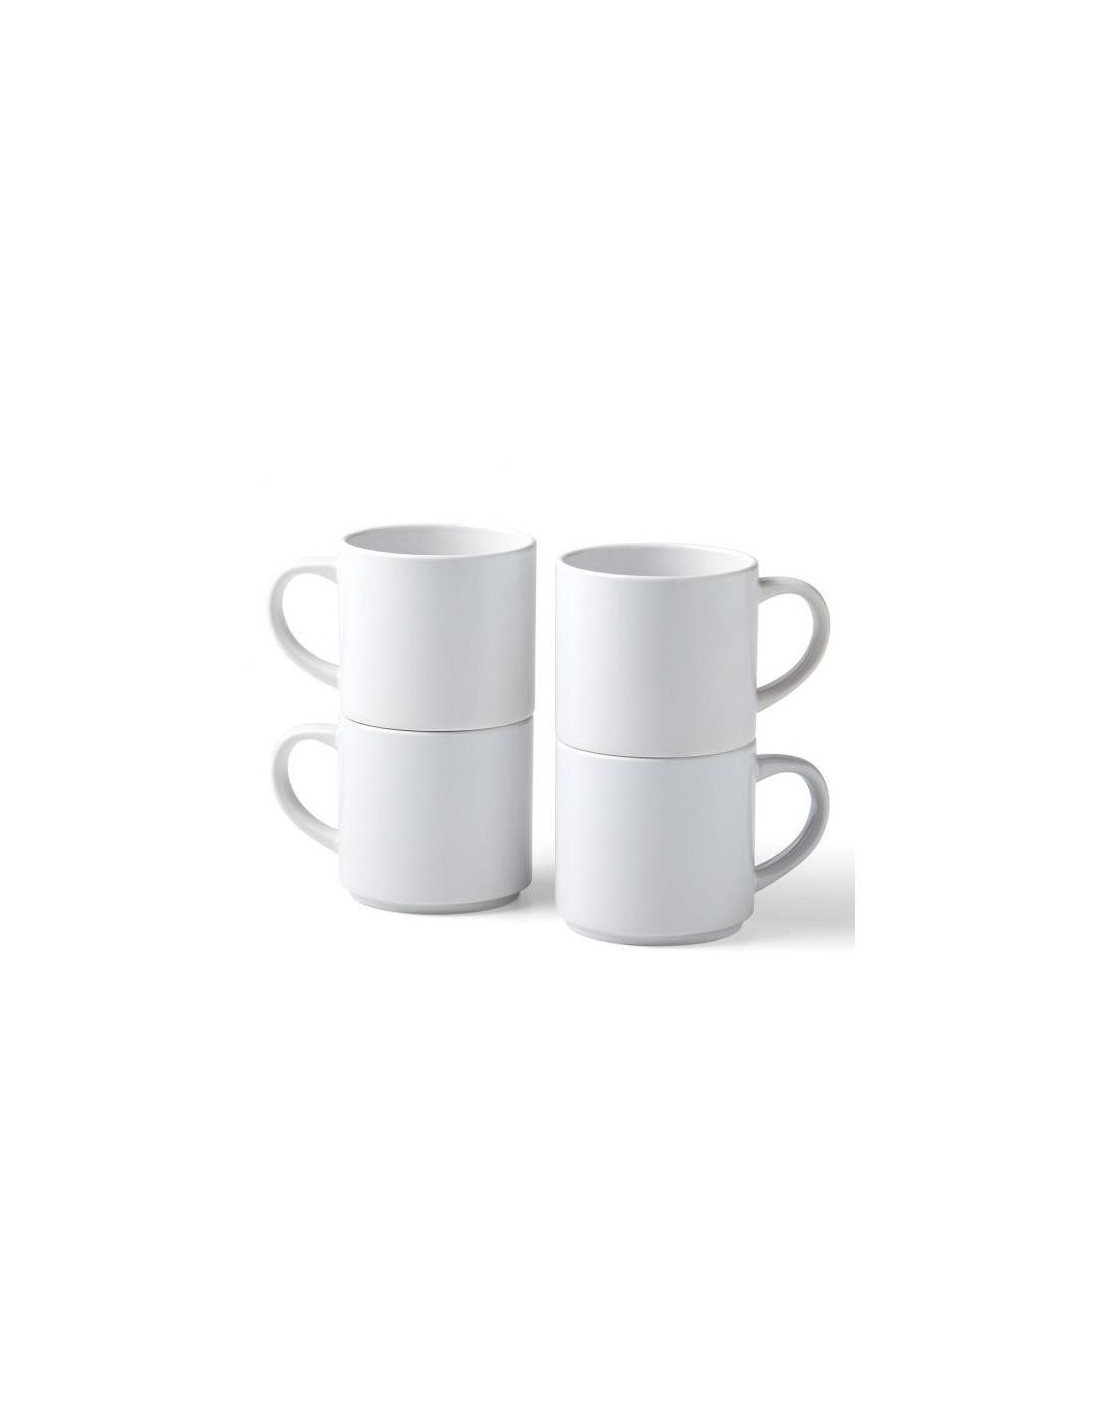 Tazas De Café Para Llevar Disponibles Del Espacio En Blanco Imagen de  archivo - Imagen de objeto, envase: 155122649